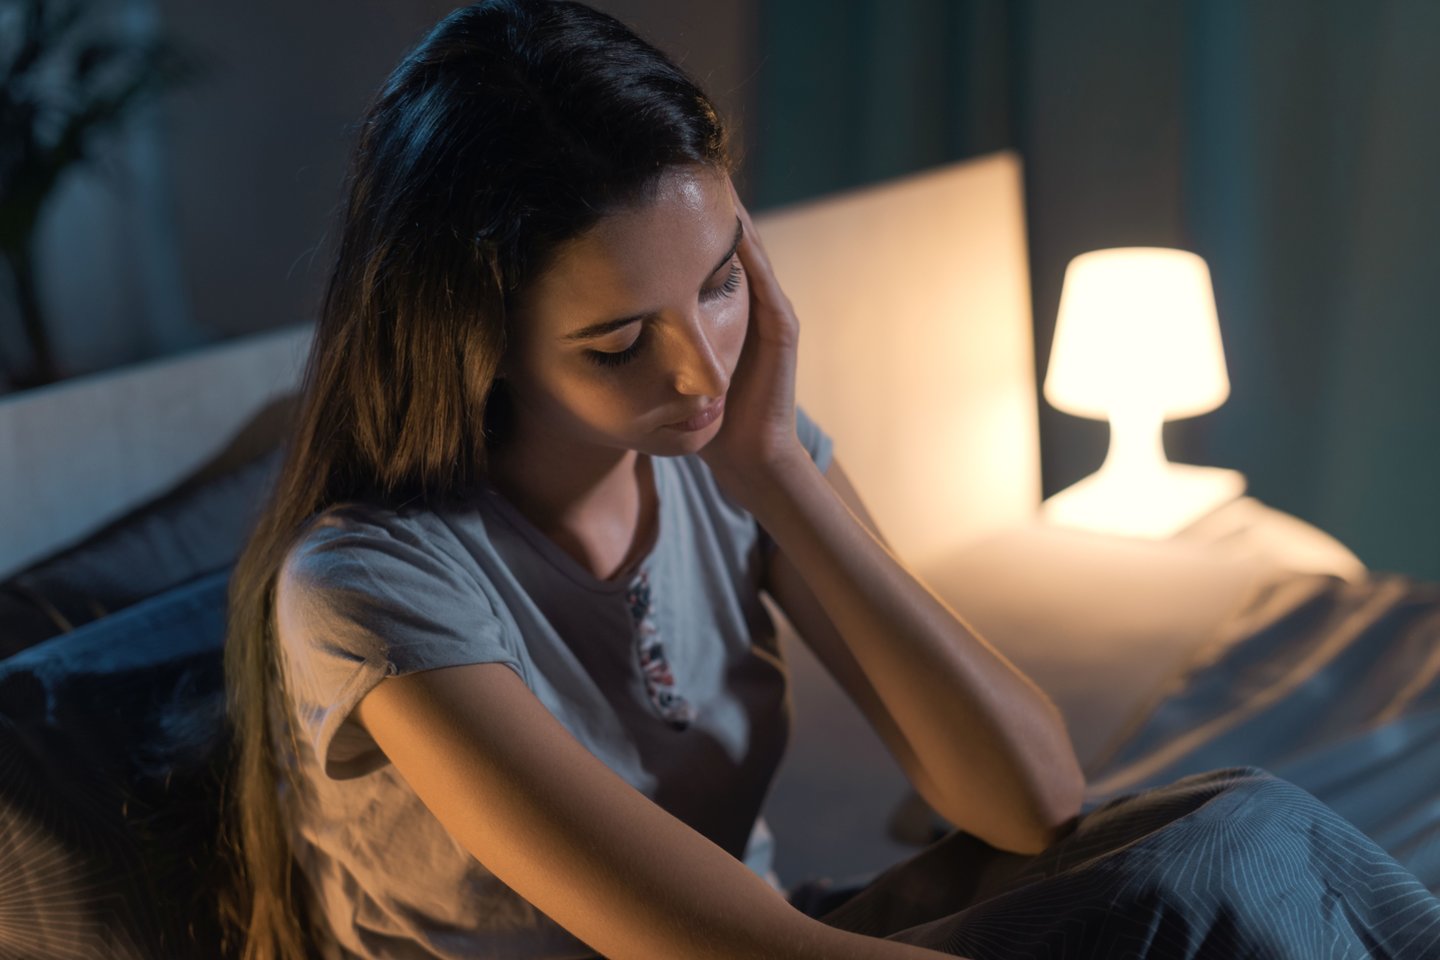 Tyrimas rodo, kad vos viena naktis, kai trūksta miego, gali būti susijusi su struktūriniais smegenų pokyčiais, panašiais į tuos, kurie pastebimi senstant.<br>123rf nuotr.